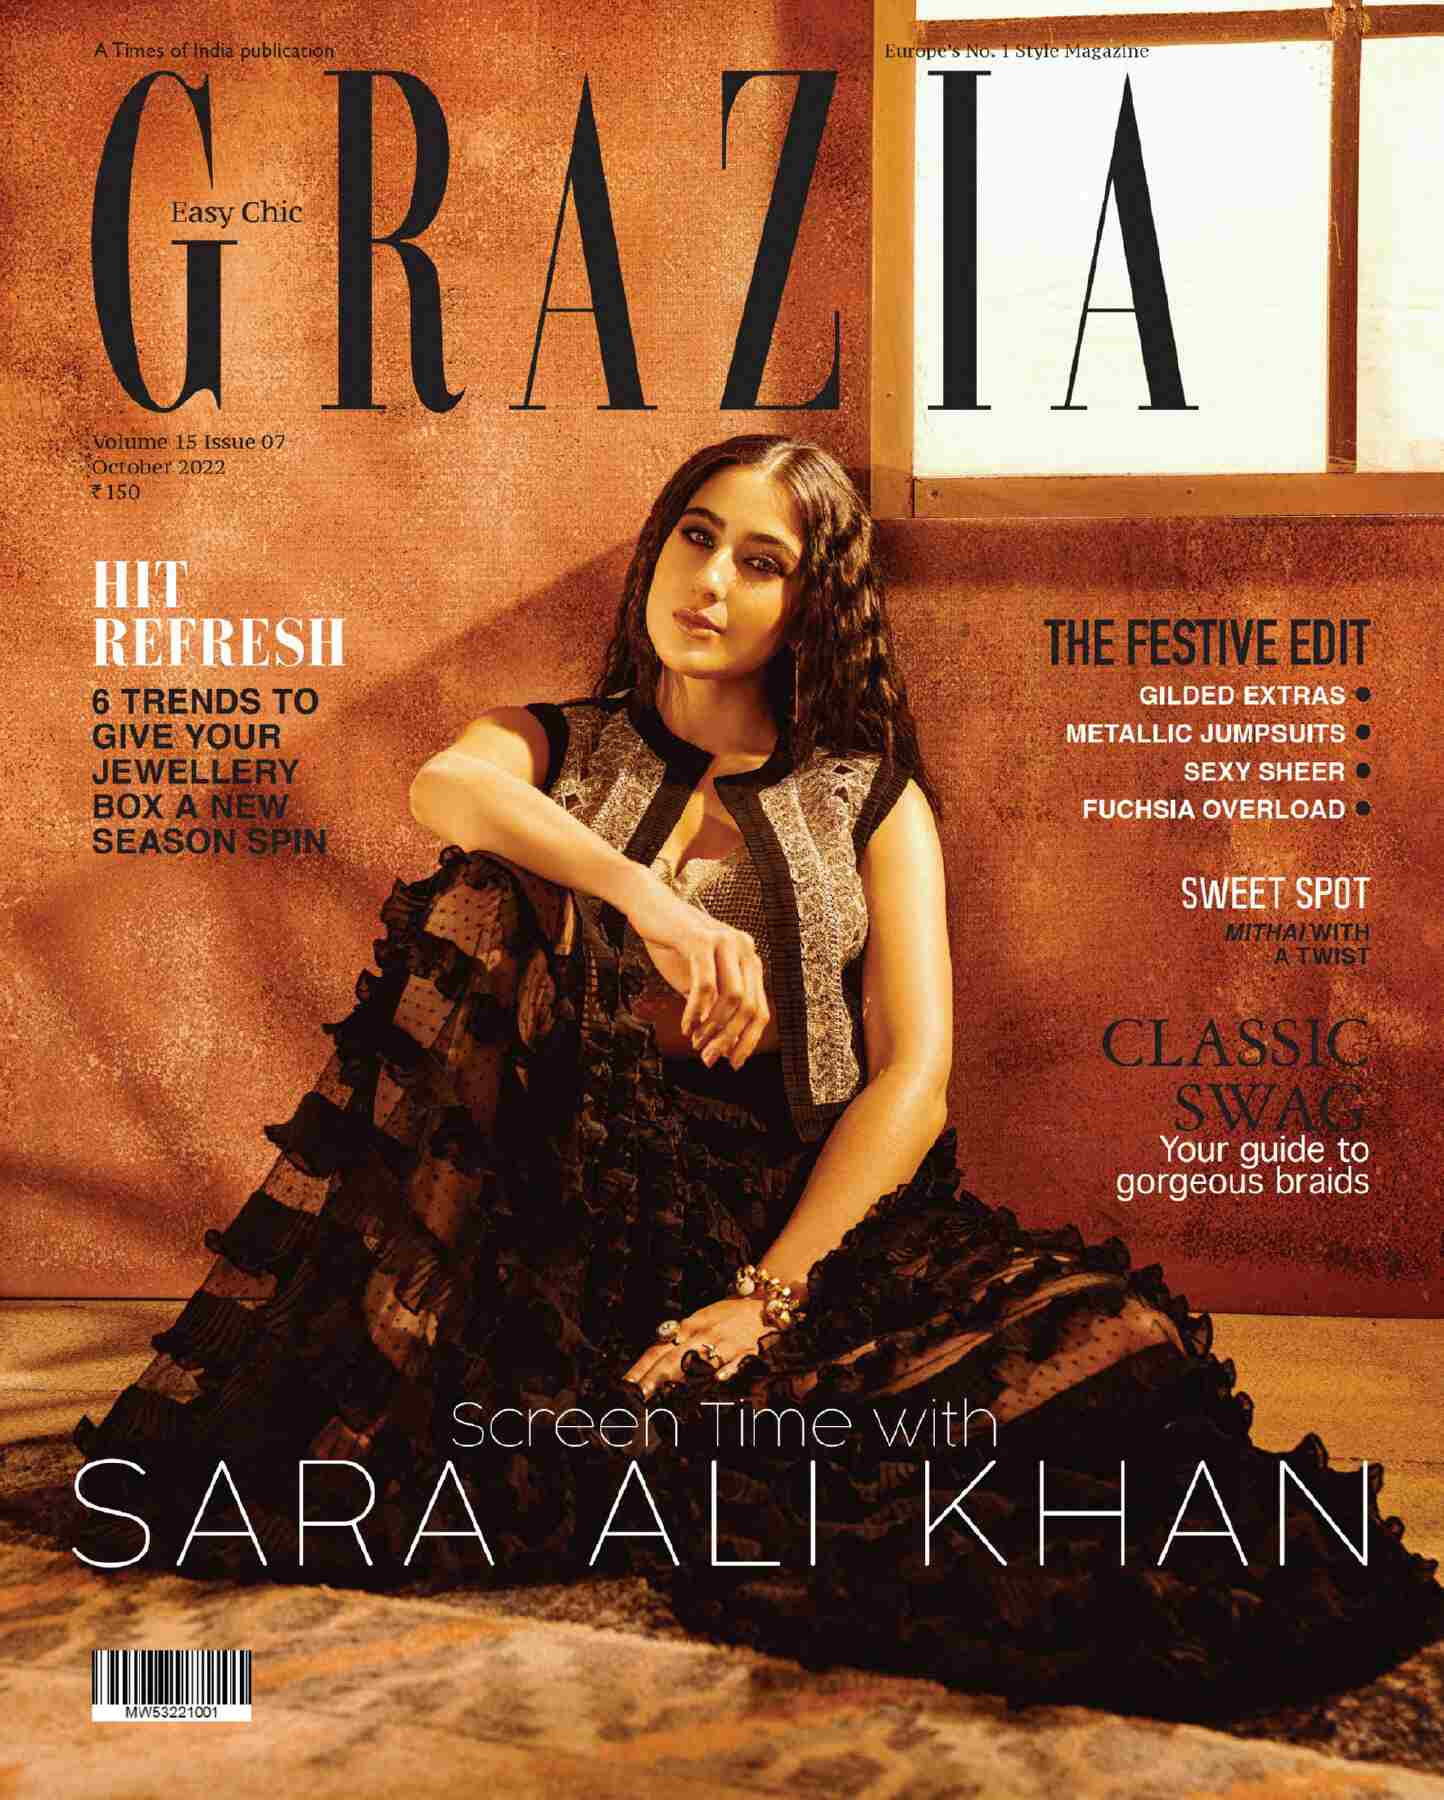 Sara Ali Khan